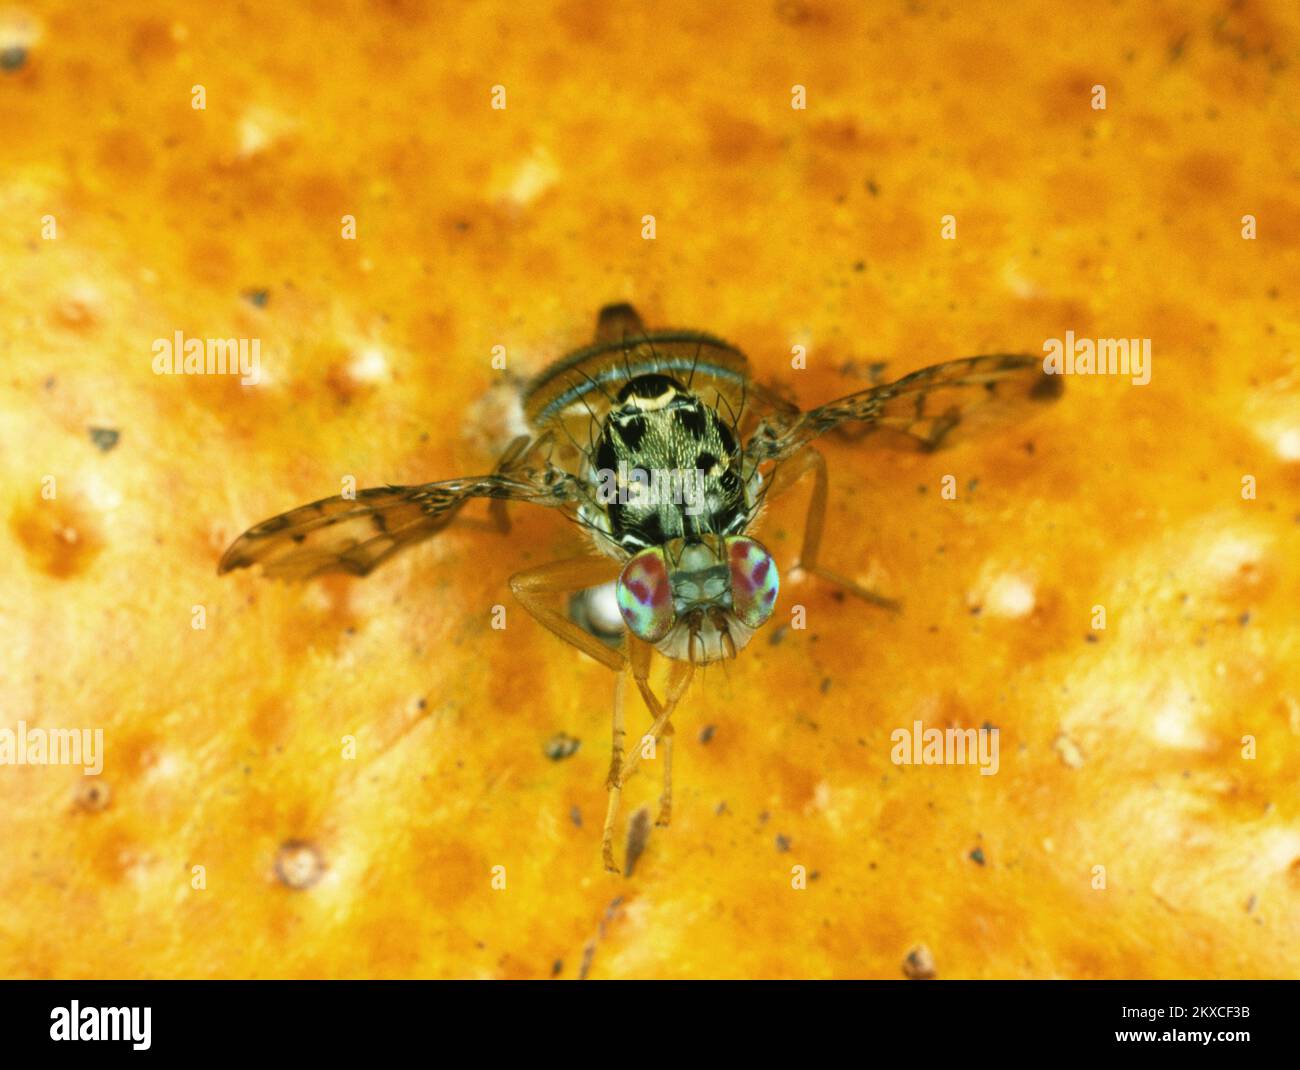 Mosca mediterránea de la fruta (Ceratitis capitata) plaga de cítricos de la mosca del adulto con pose típica del ala en la fruta naranja, características claramente marcadas Foto de stock